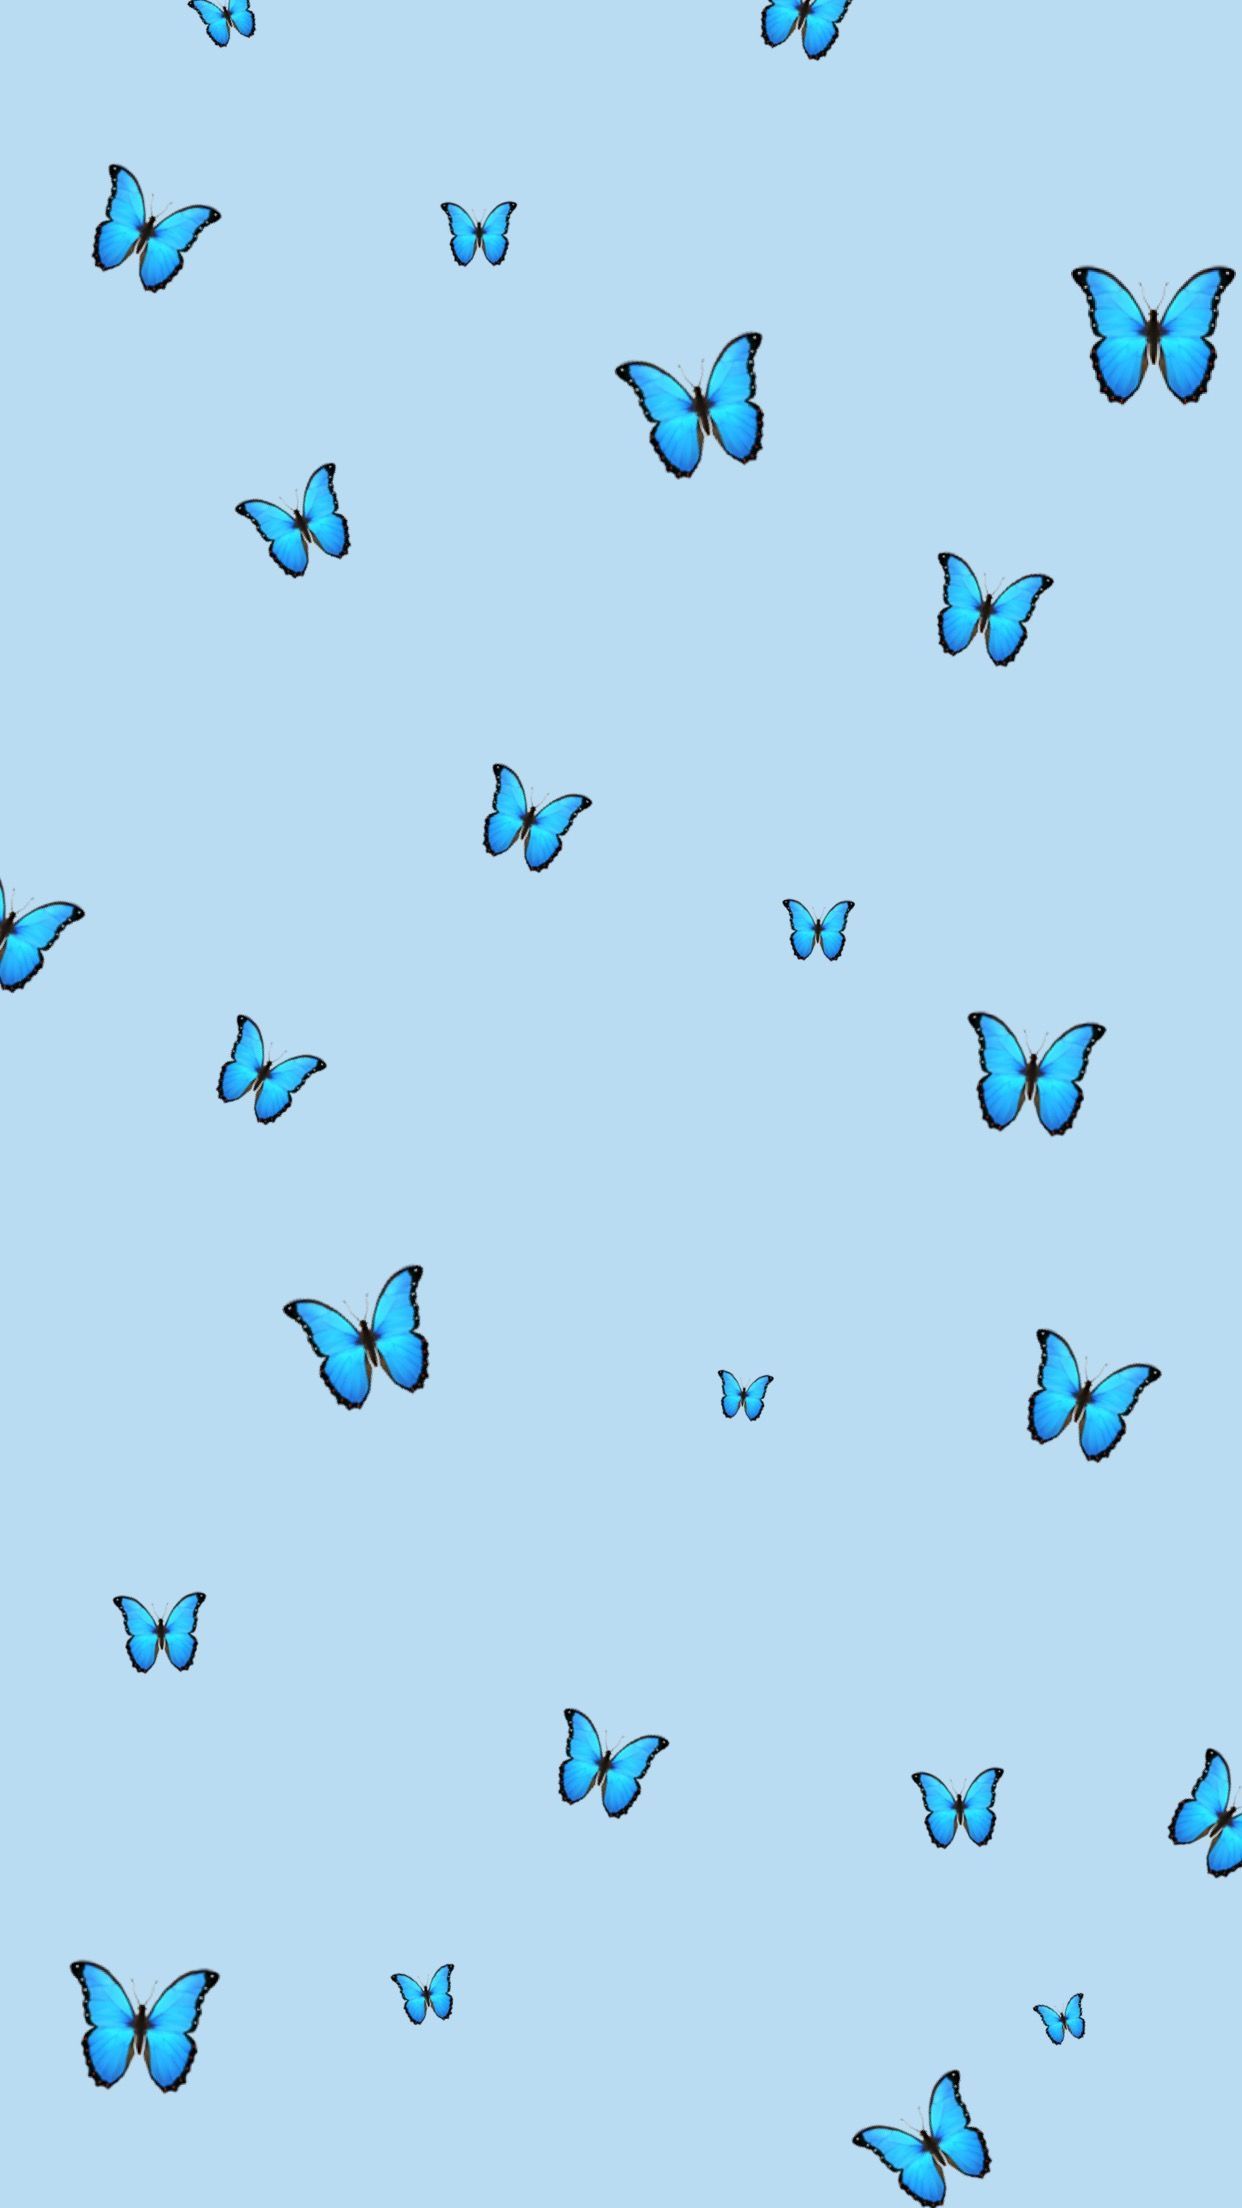 blue butterfly wallpaper. Blue butterfly wallpaper, Butterfly wallpaper iphone, Cute patterns wallpaper